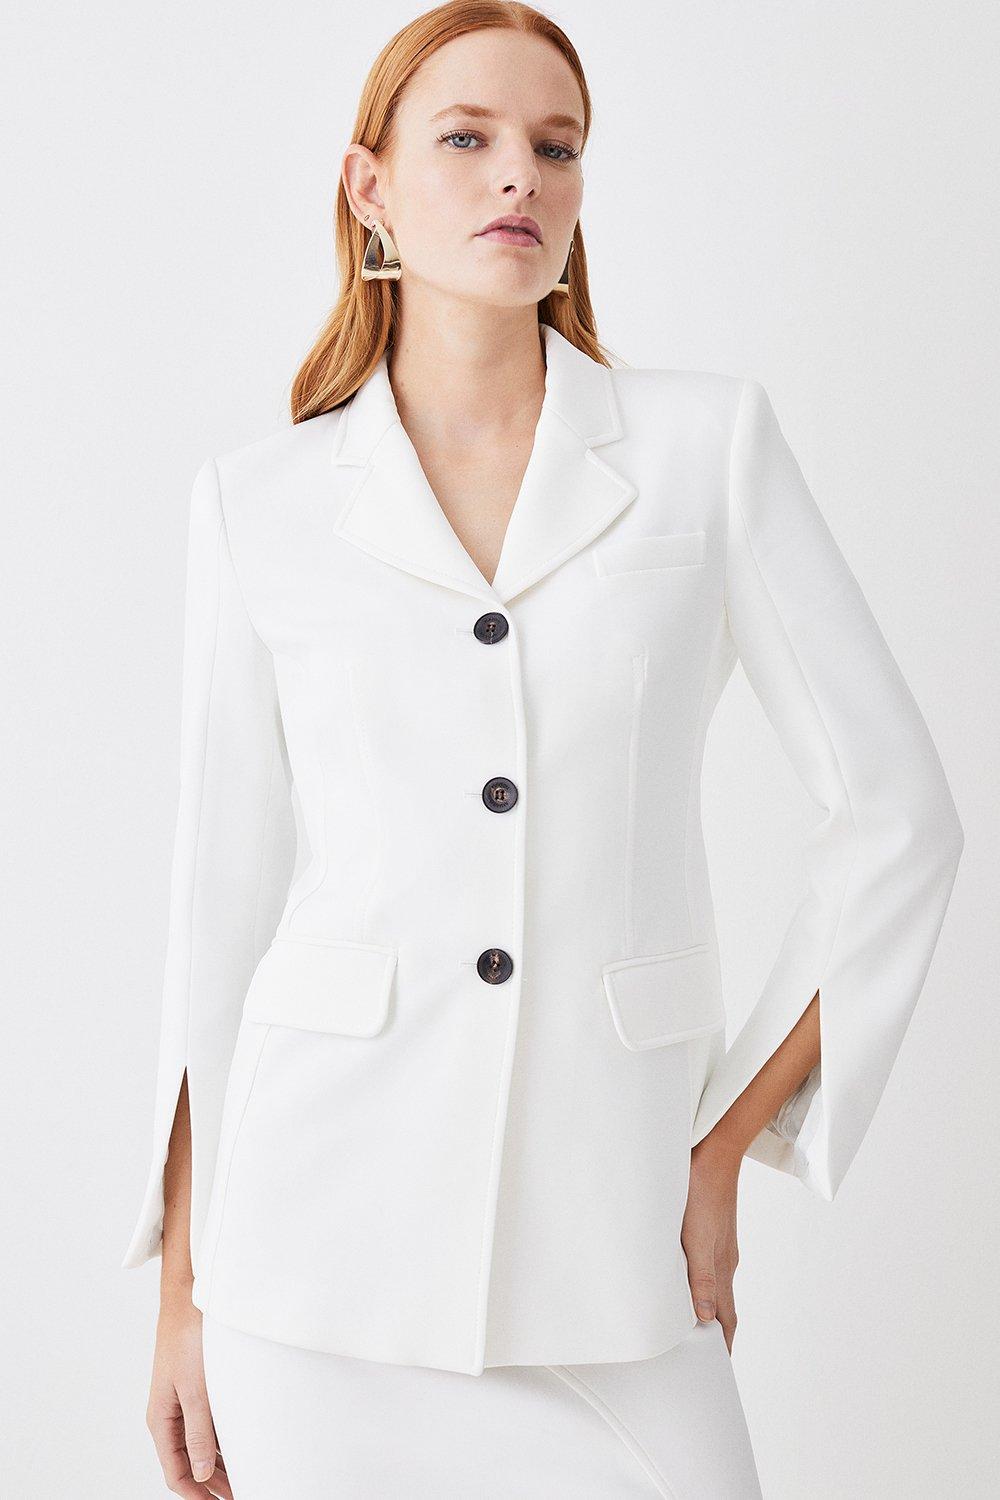 Women's Casual Wear White Faux Leather Scuba Jacket - UJackets